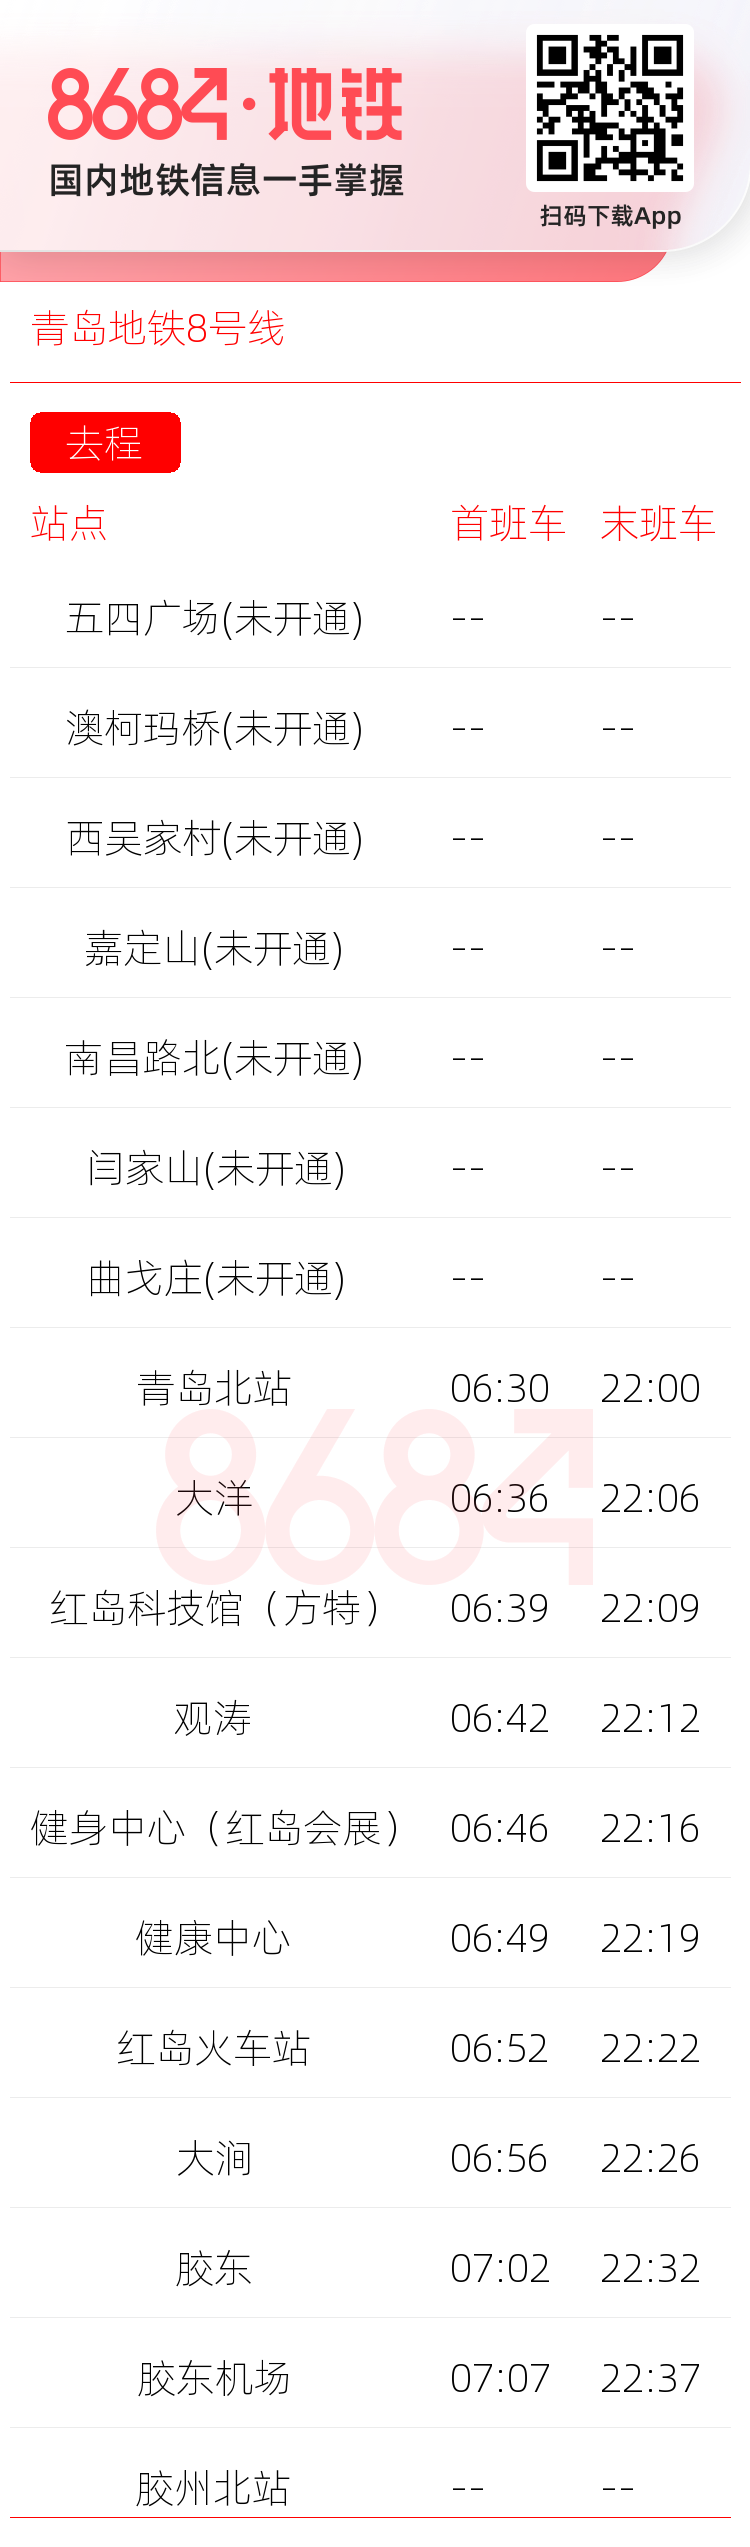 青岛地铁8号线运营时间表